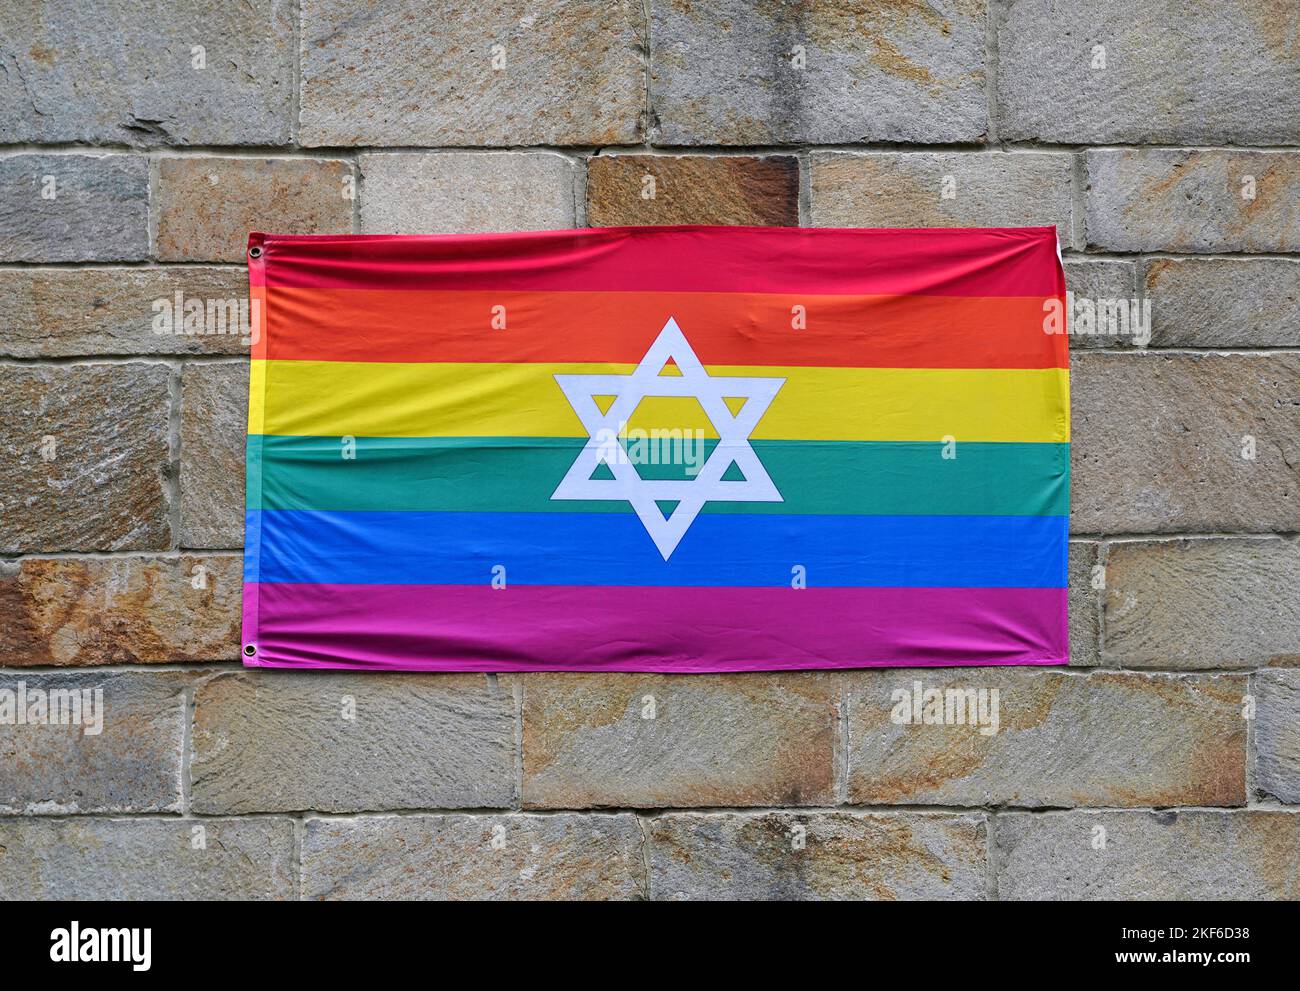 Drapeau arc-en-ciel de fierté gay avec Star of David, attaché à un mur de pierre Banque D'Images